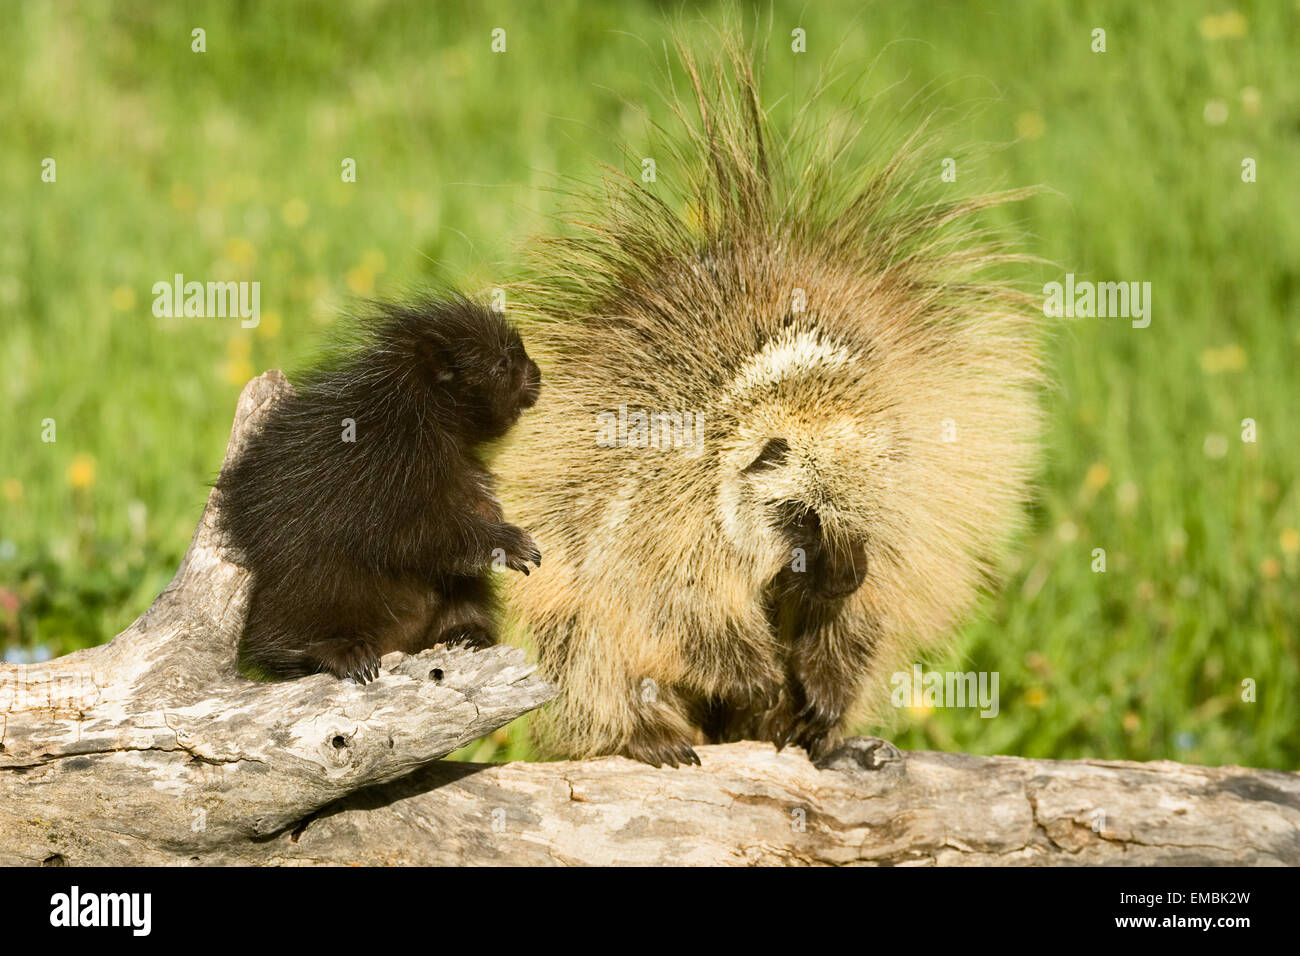 Erwachsenen und jungen gemeinsamen Porcupine (Erethizon Dorsatum) sahen einander auf einem Baumstamm in der Wiese. Stockfoto